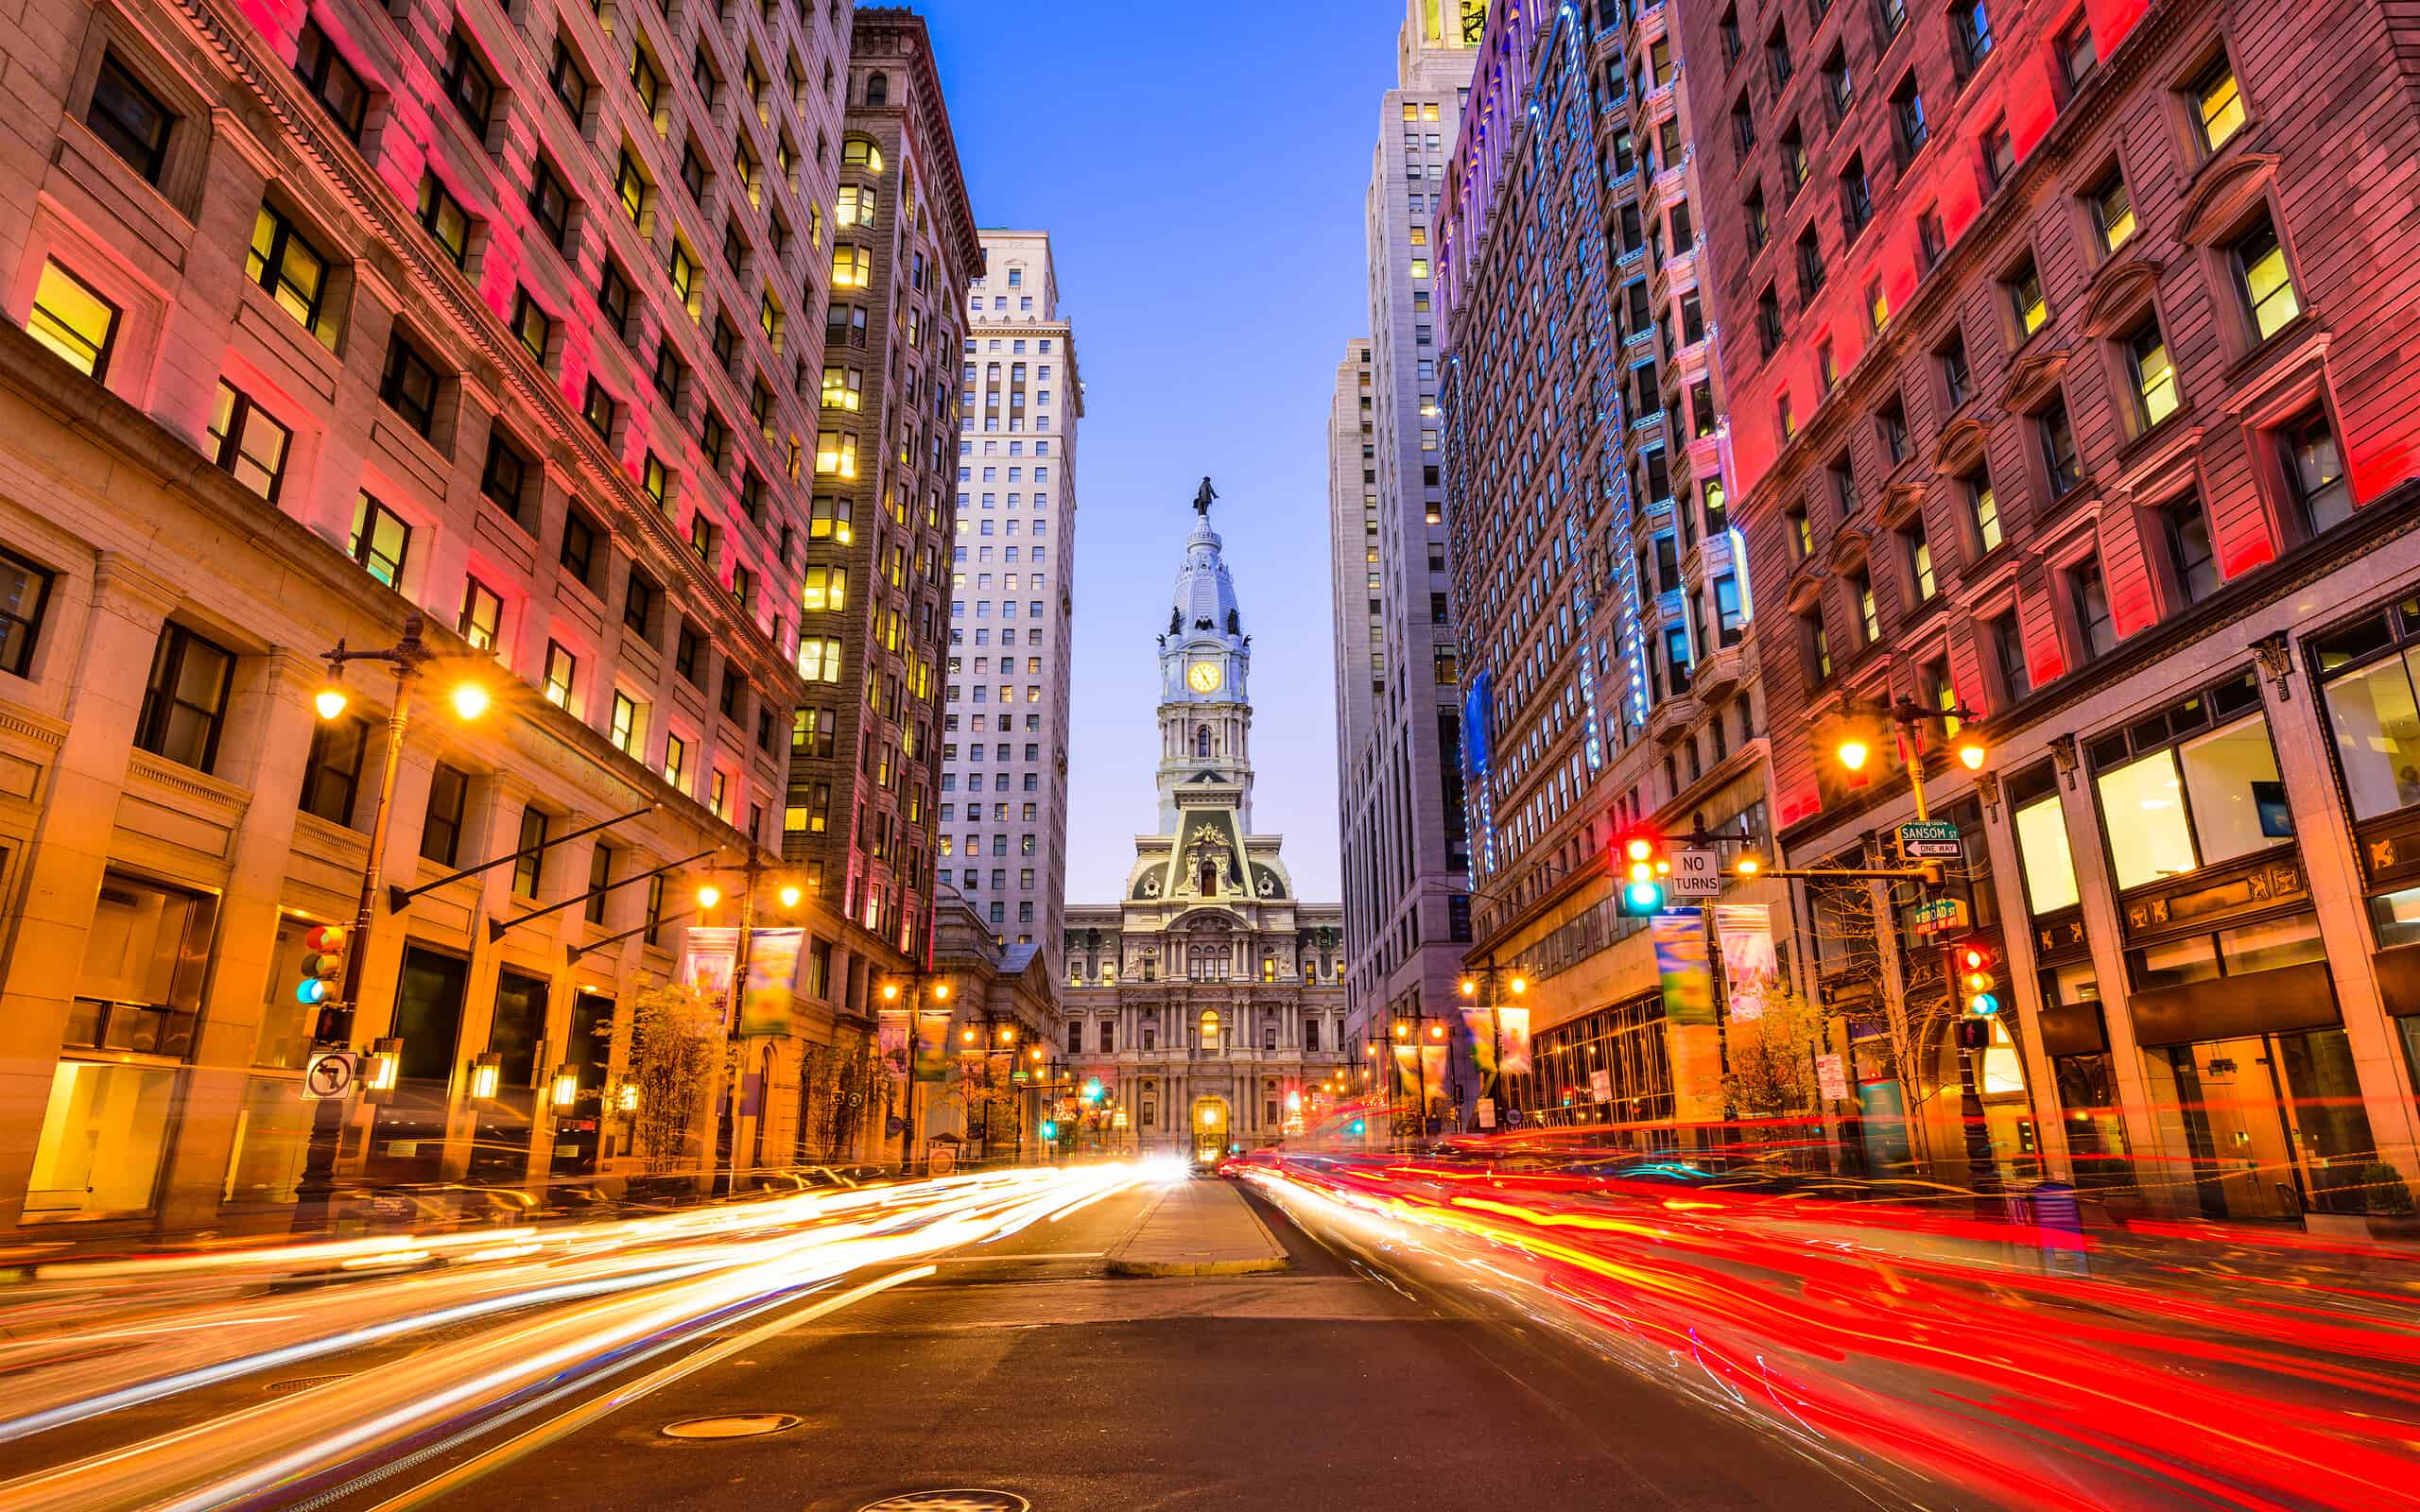 Philadelphia on Broad Street